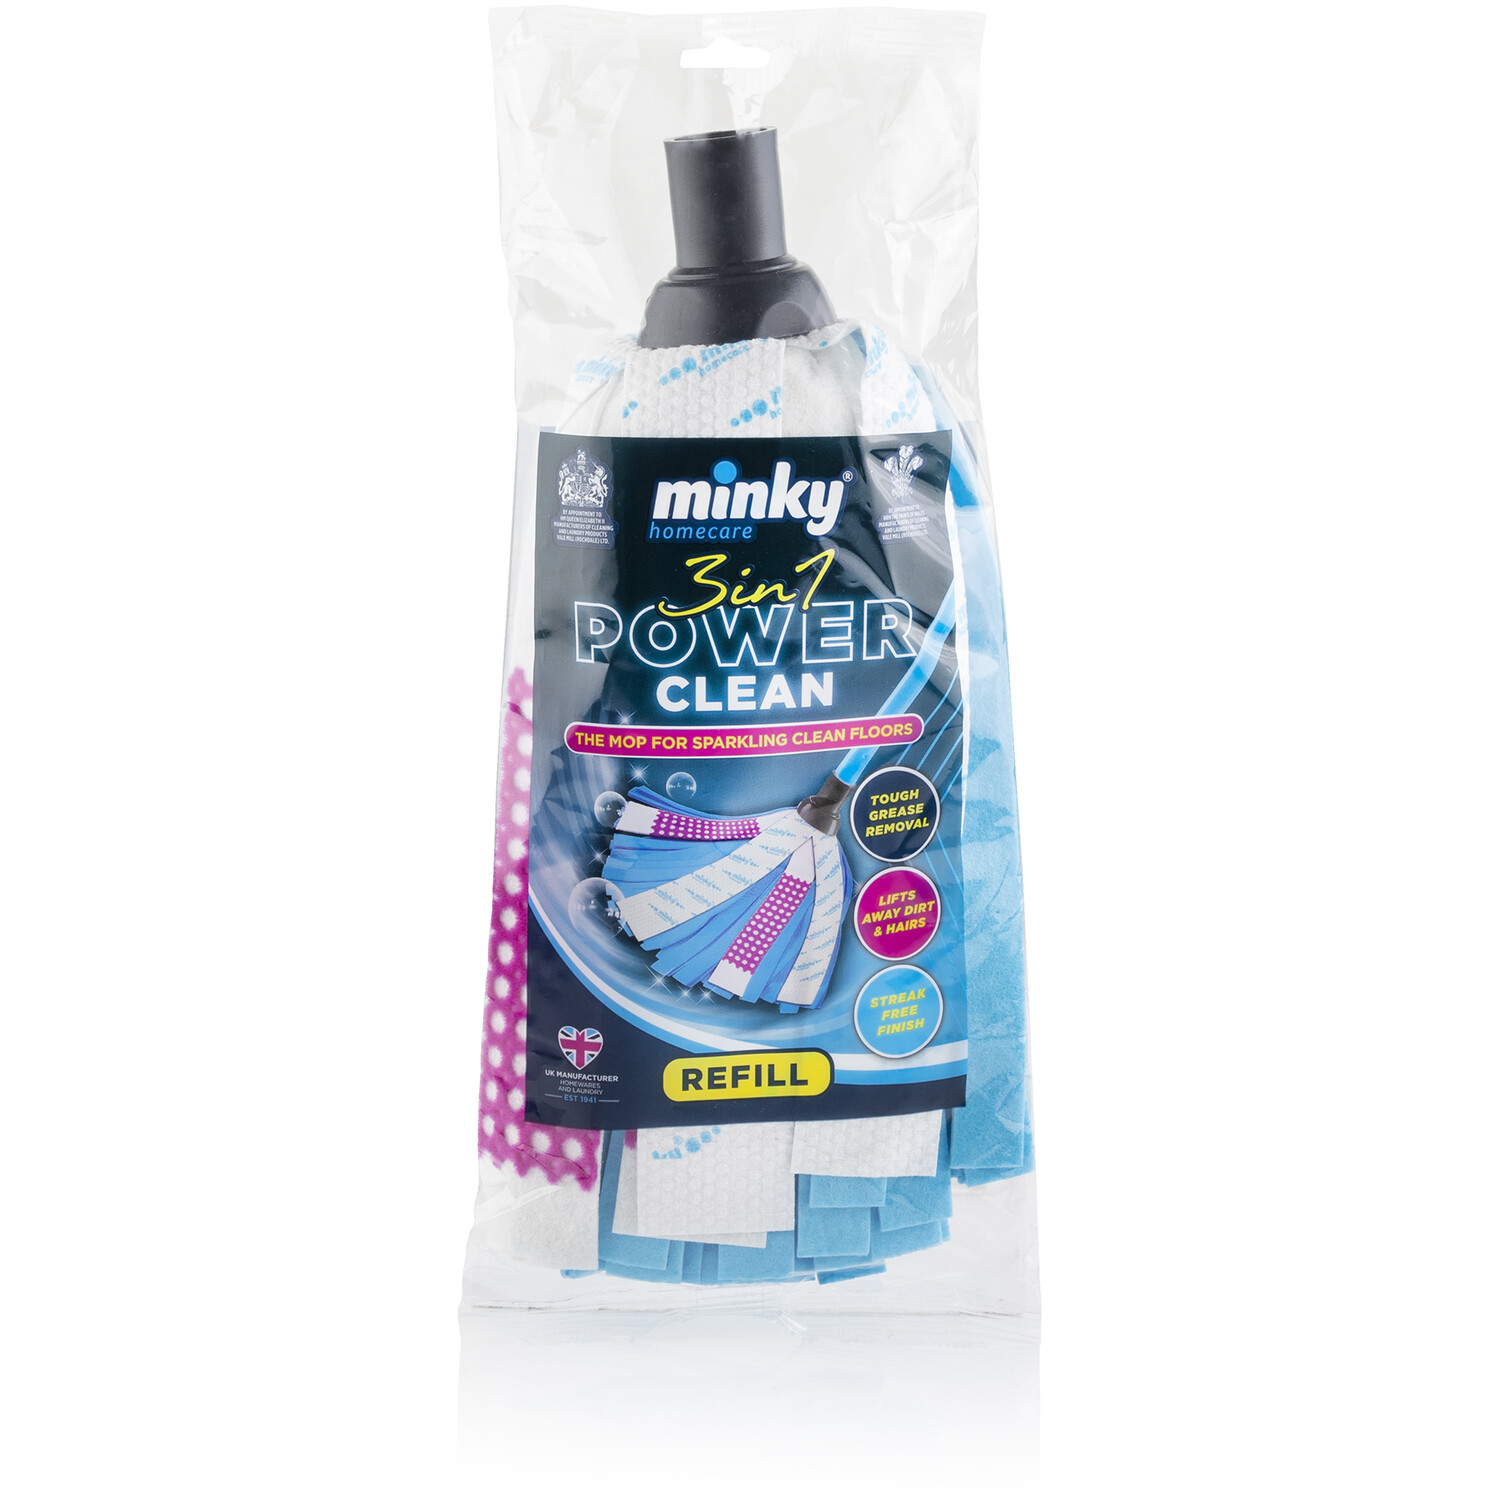 Minky 3 in 1 Power Clean Mop Refill Image 1